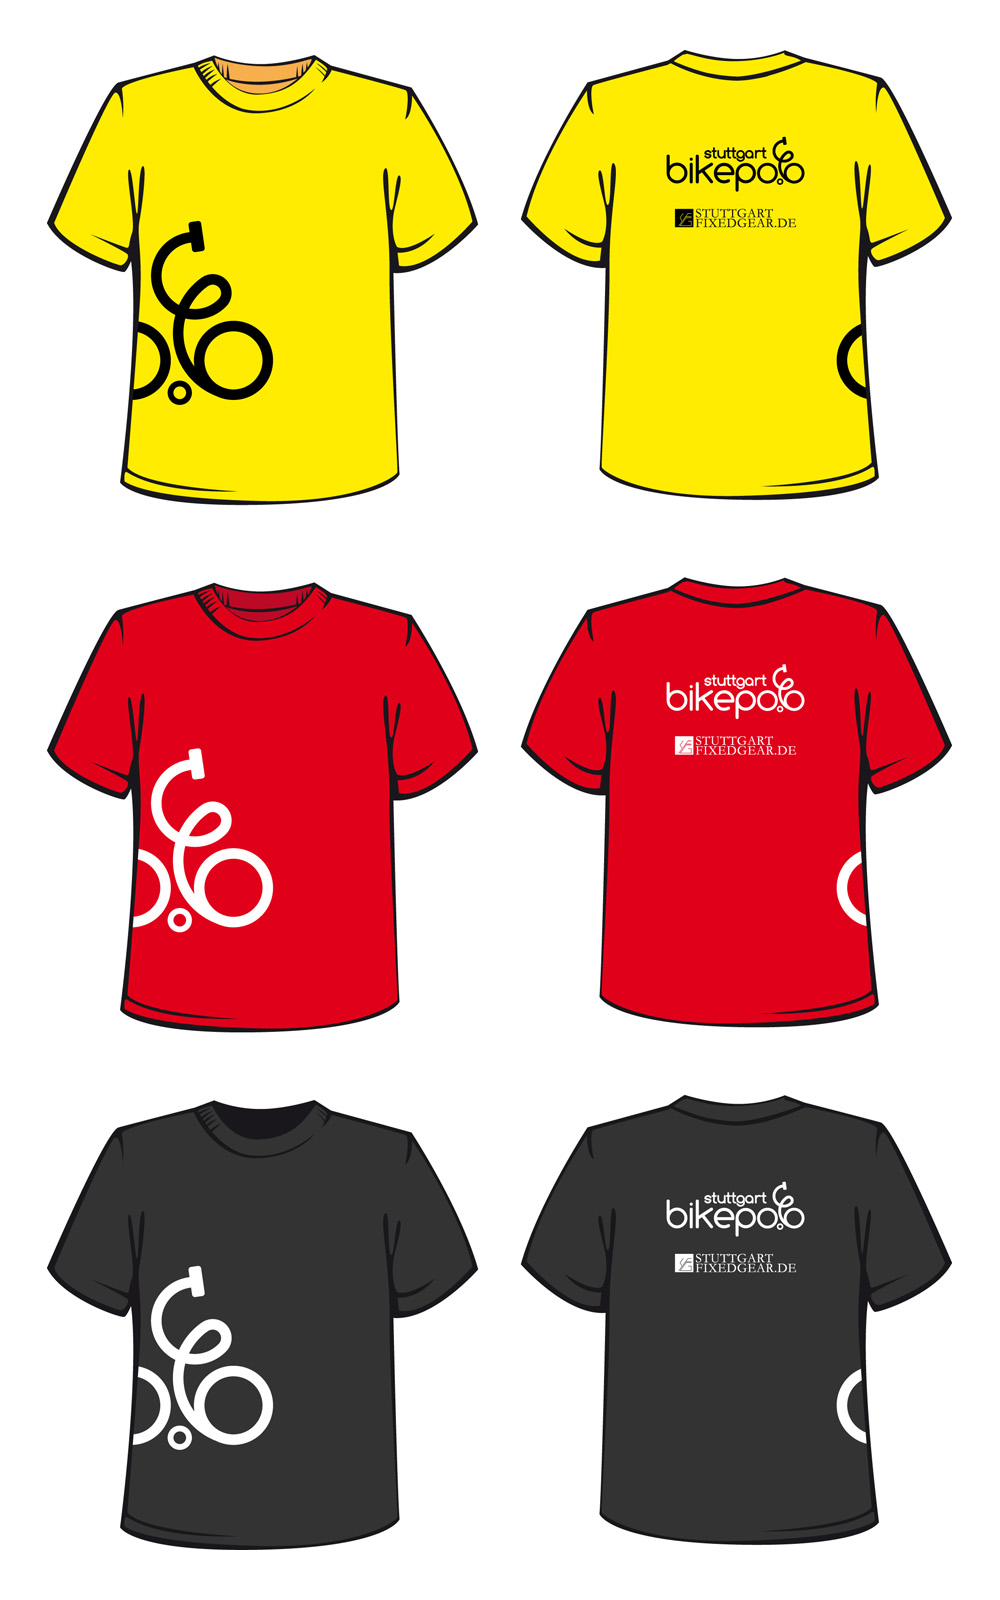 bikepolo-tshirt